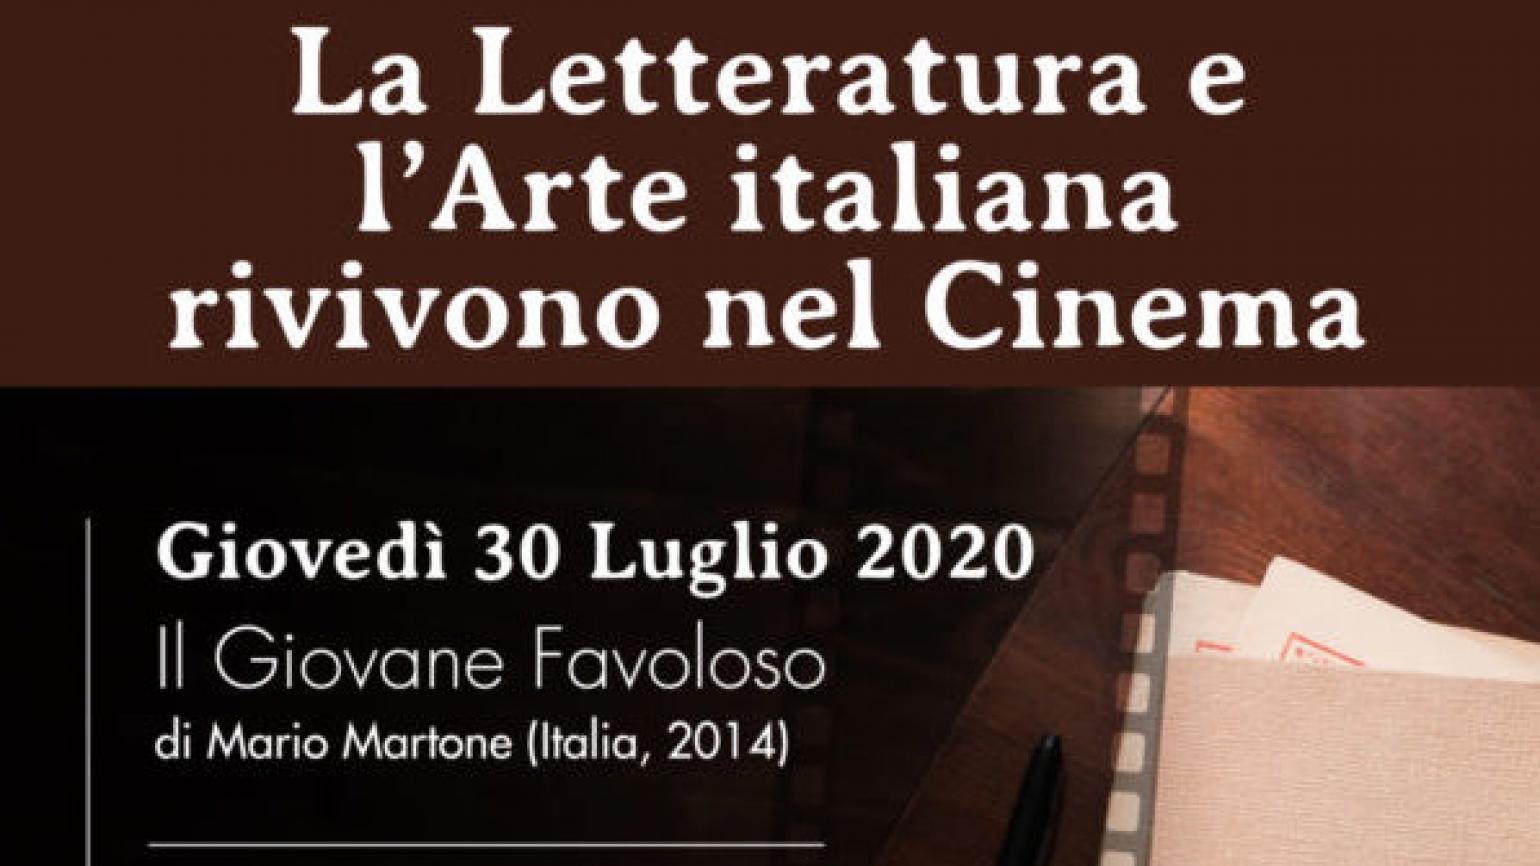 La Letteratura e l’Arte italiana rivivono nel cinema